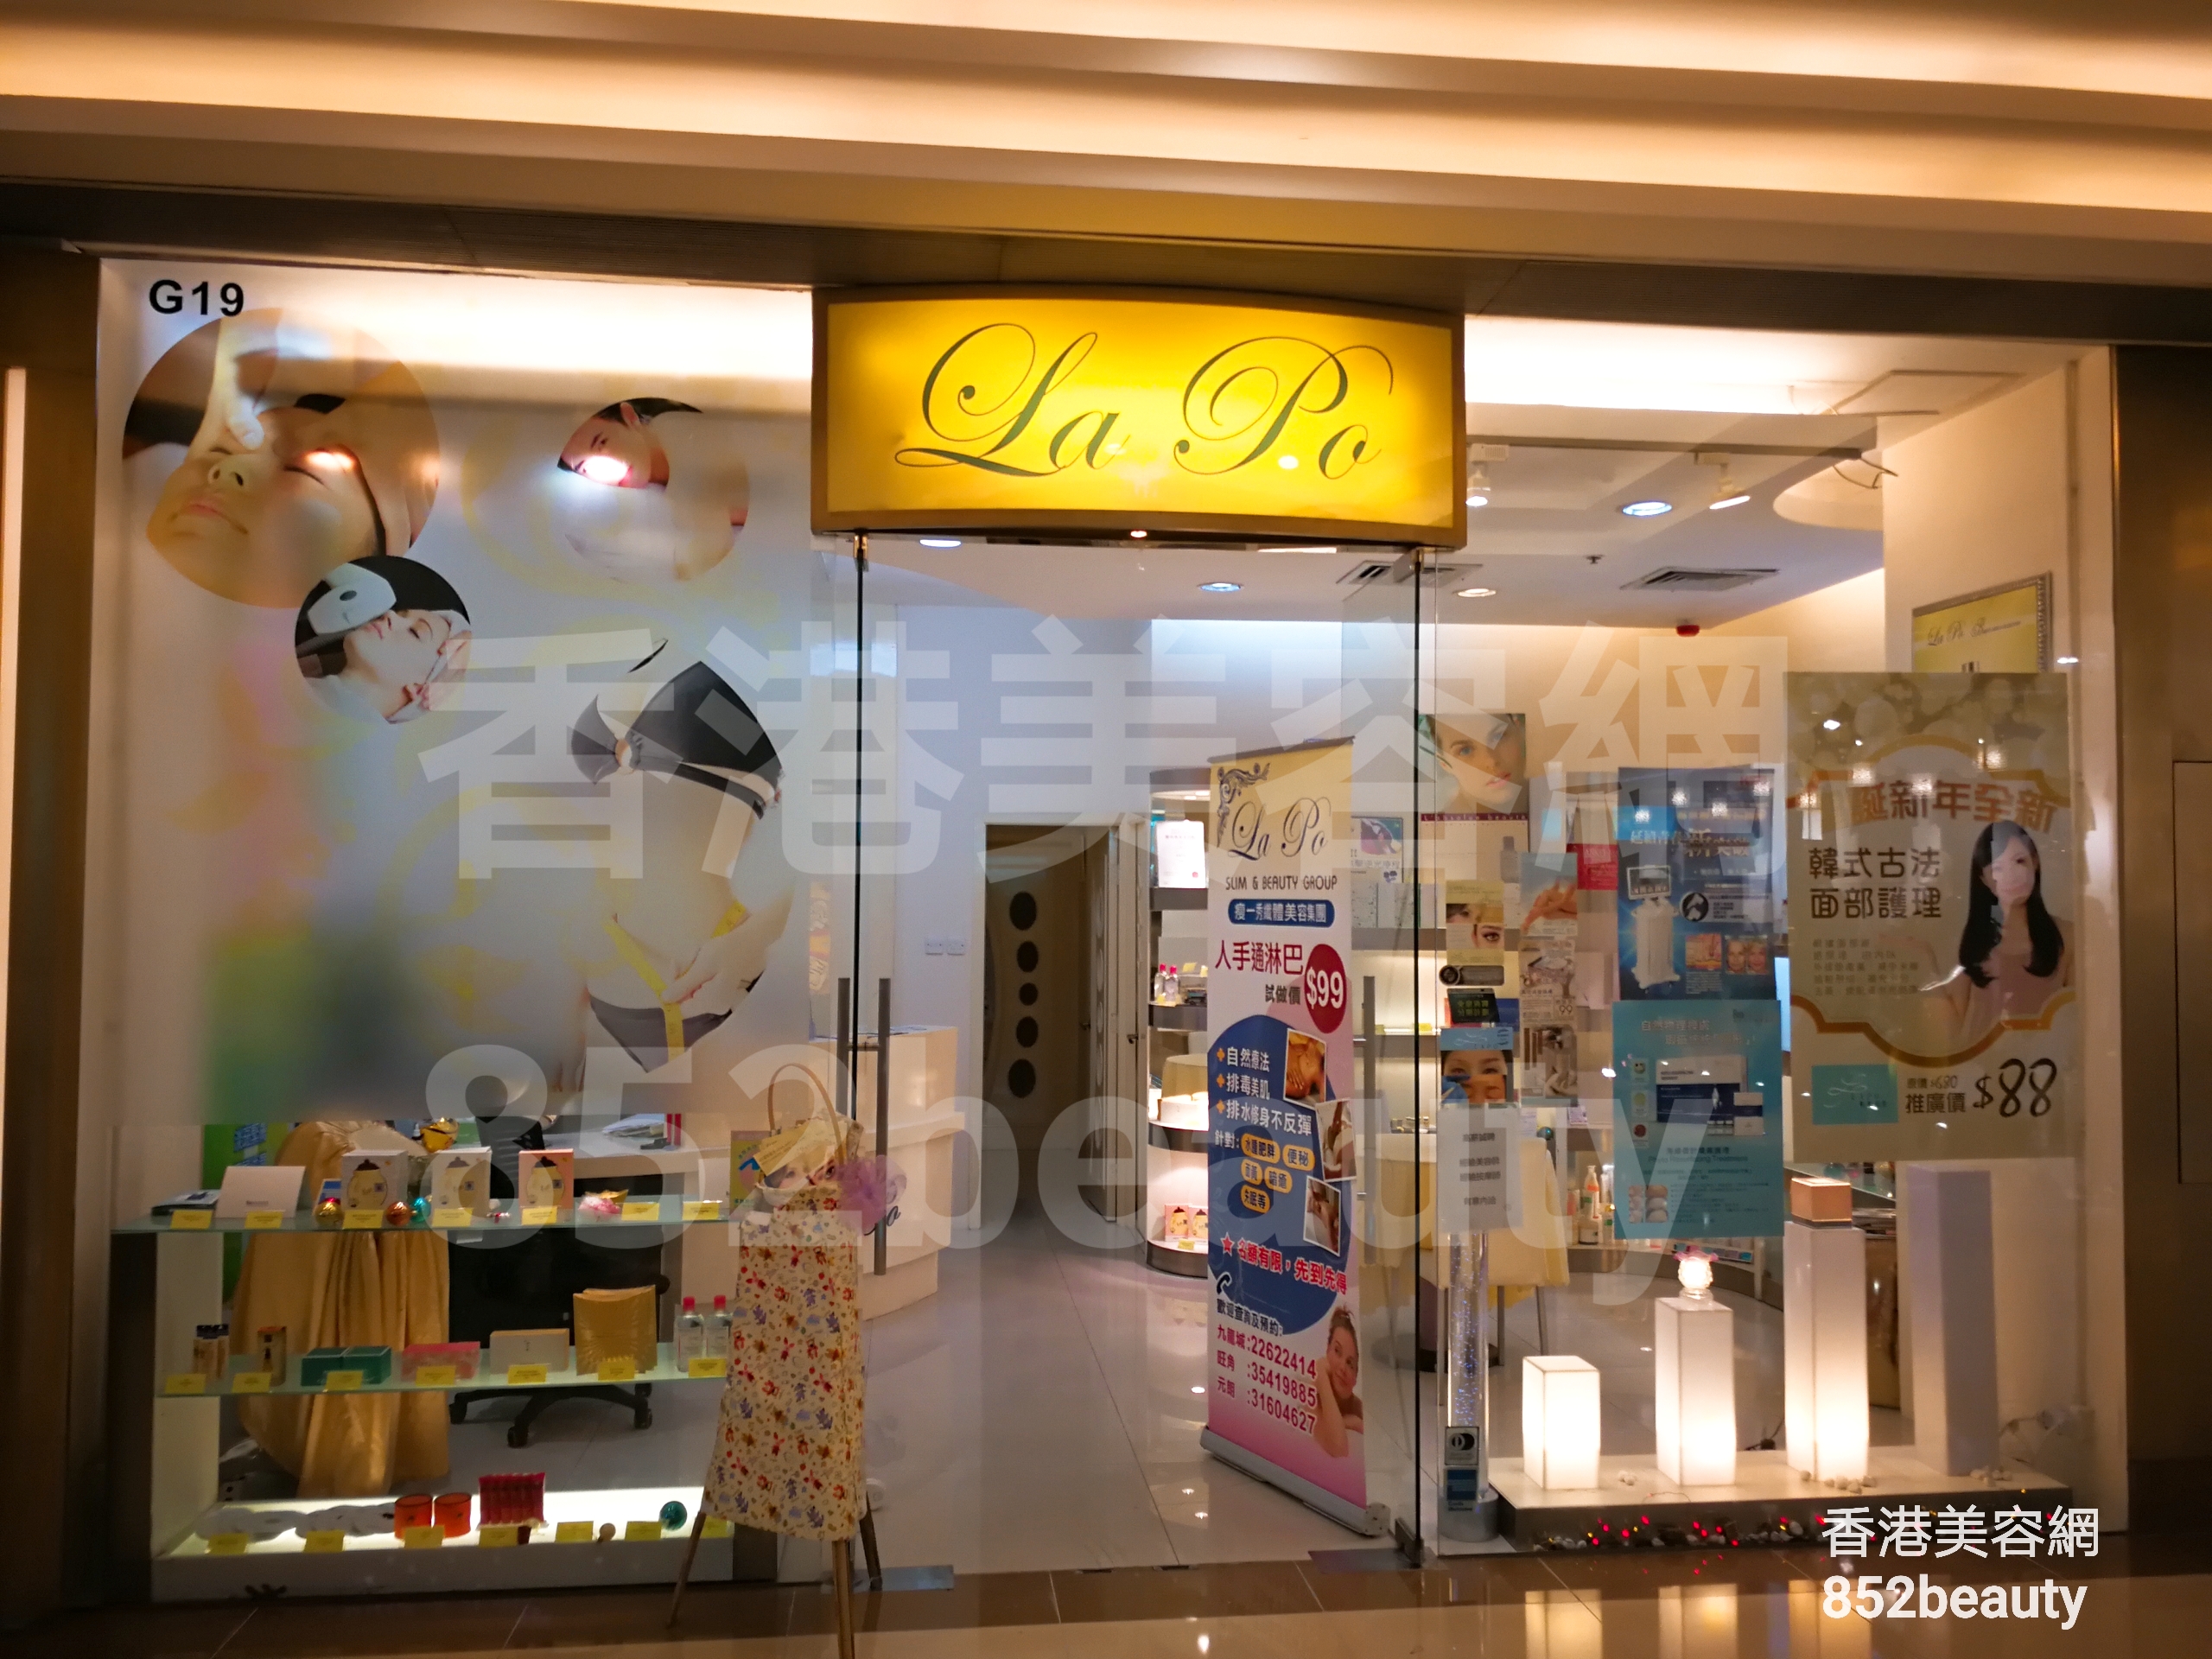 香港美容網 Hong Kong Beauty Salon 美容院 / 美容師: LaPo 尊貴美容